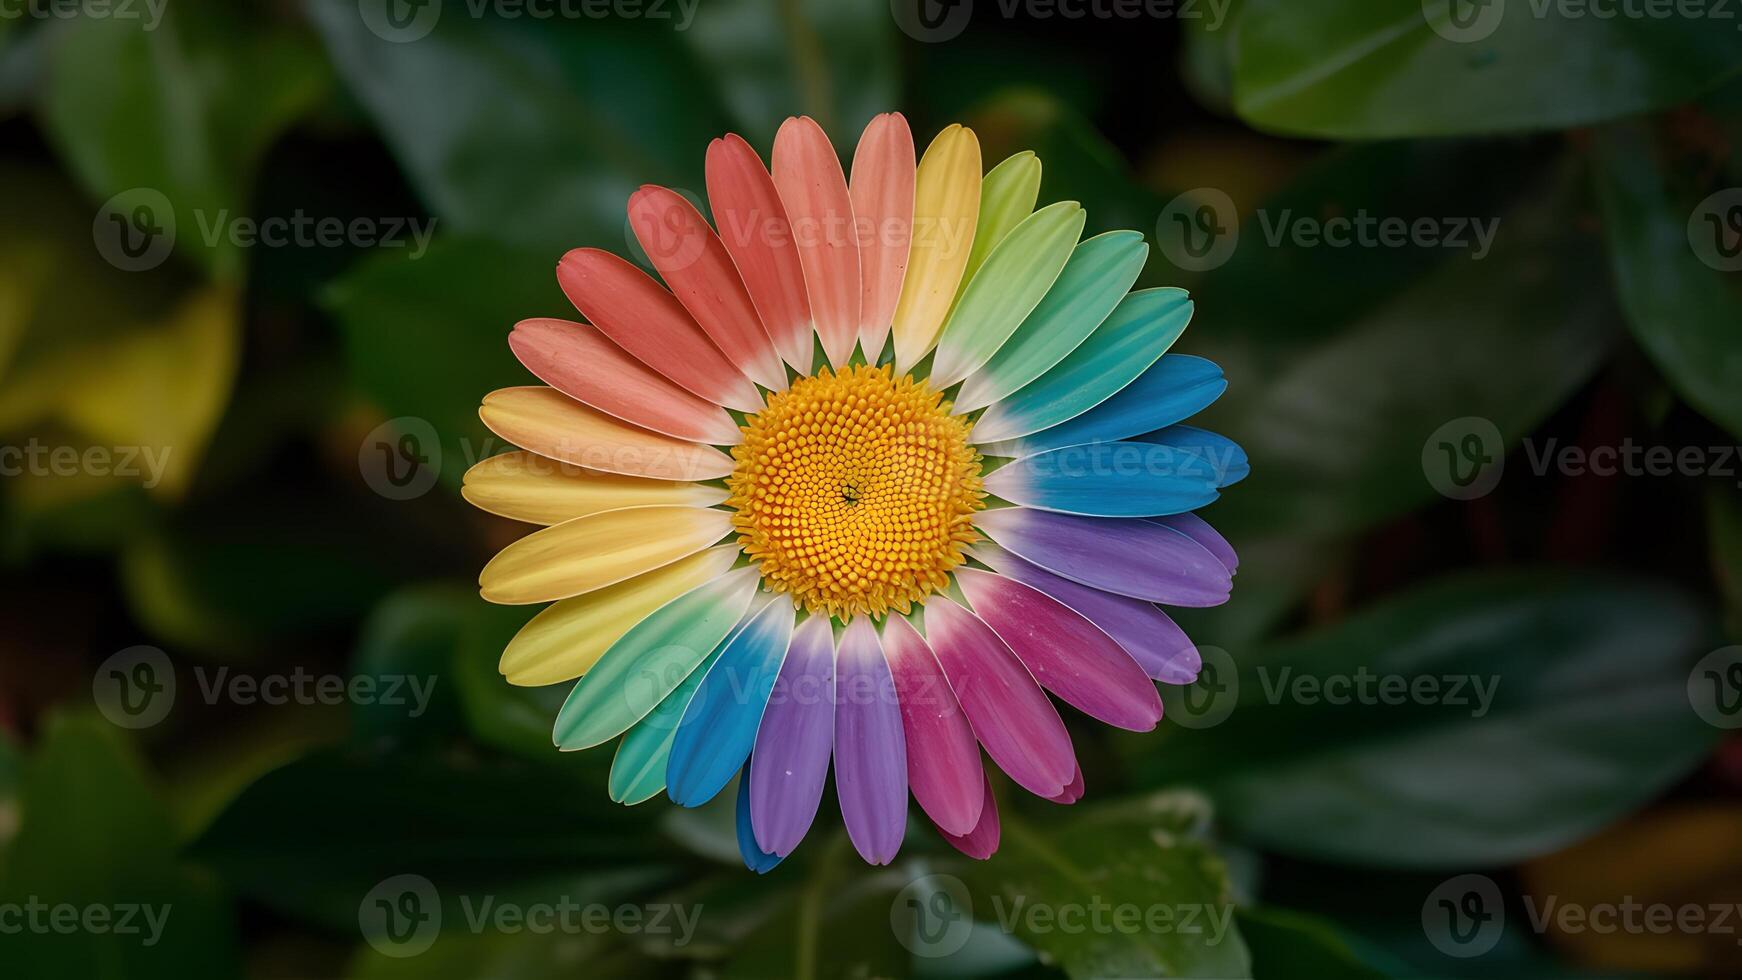 ai generado vibrante margarita flor adornado con arco iris de colores pétalos foto